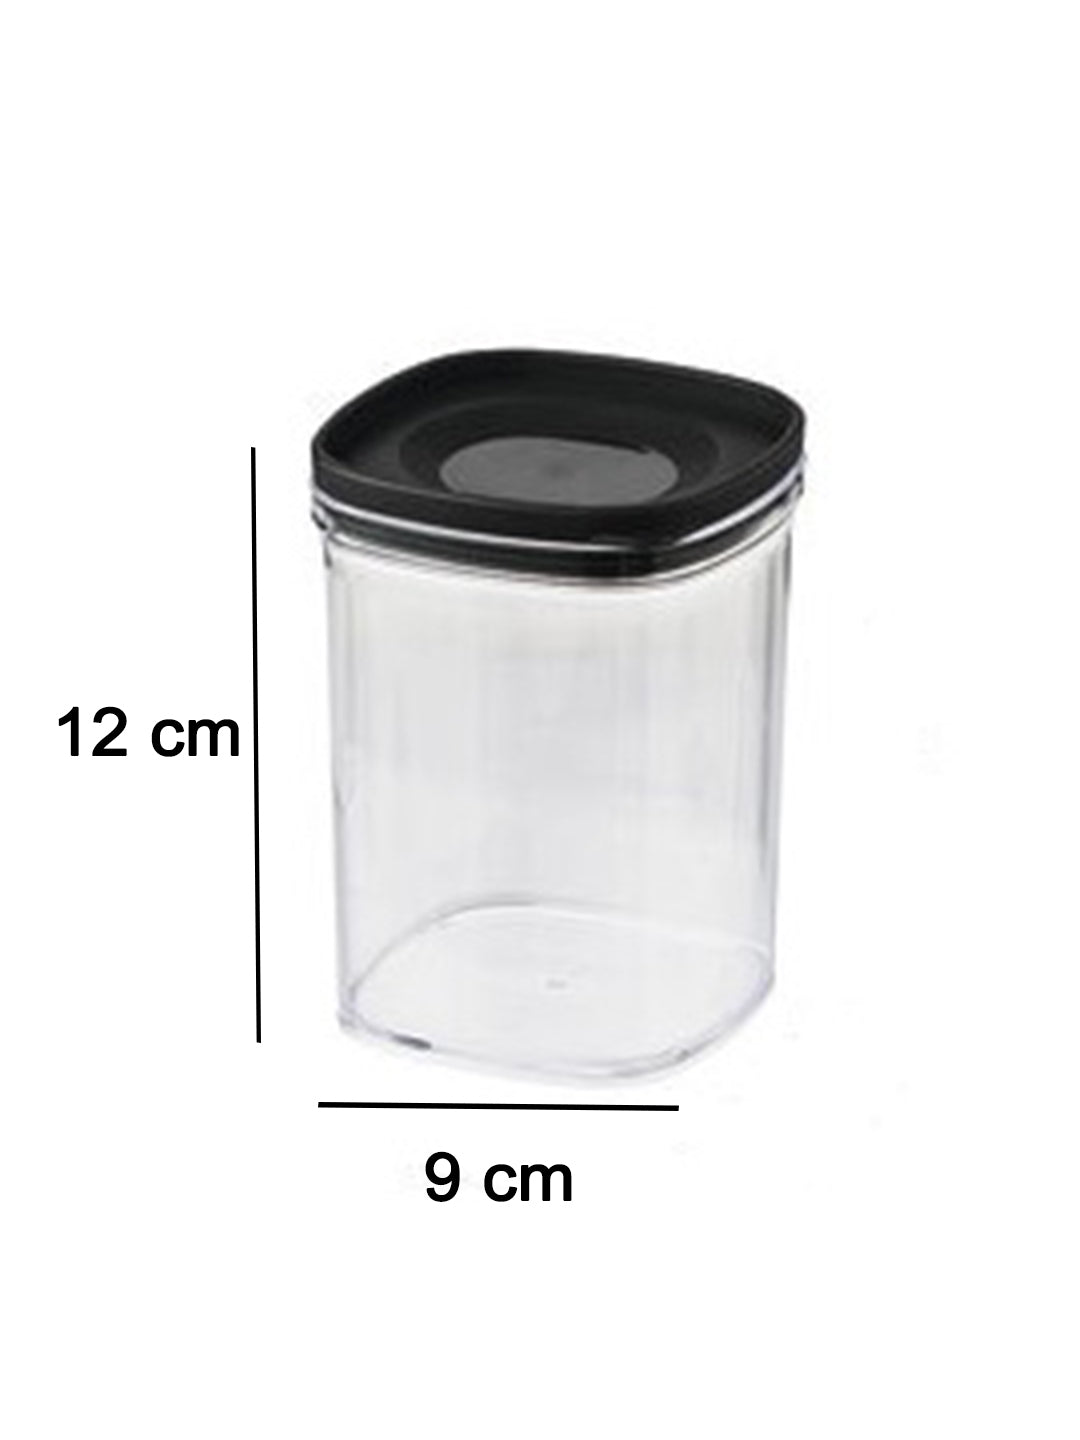 VON CASA Kitchen Cabinet Medium Airtight Plastic Containers - Black, Transparent